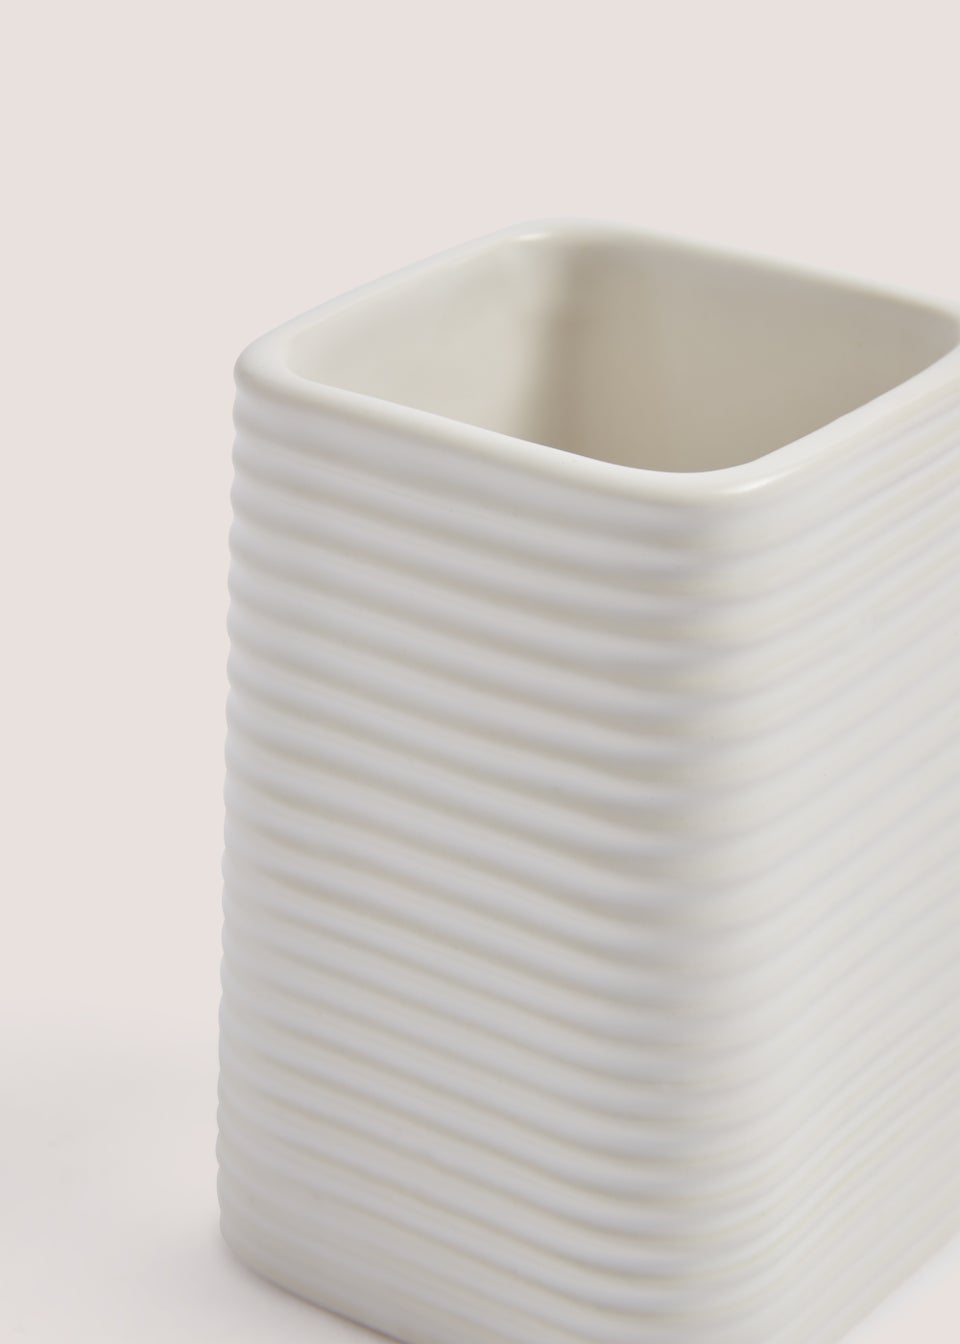 White Ceramic Bathroom Tumbler (7.5cm x 7.5cm x 11.5cm)